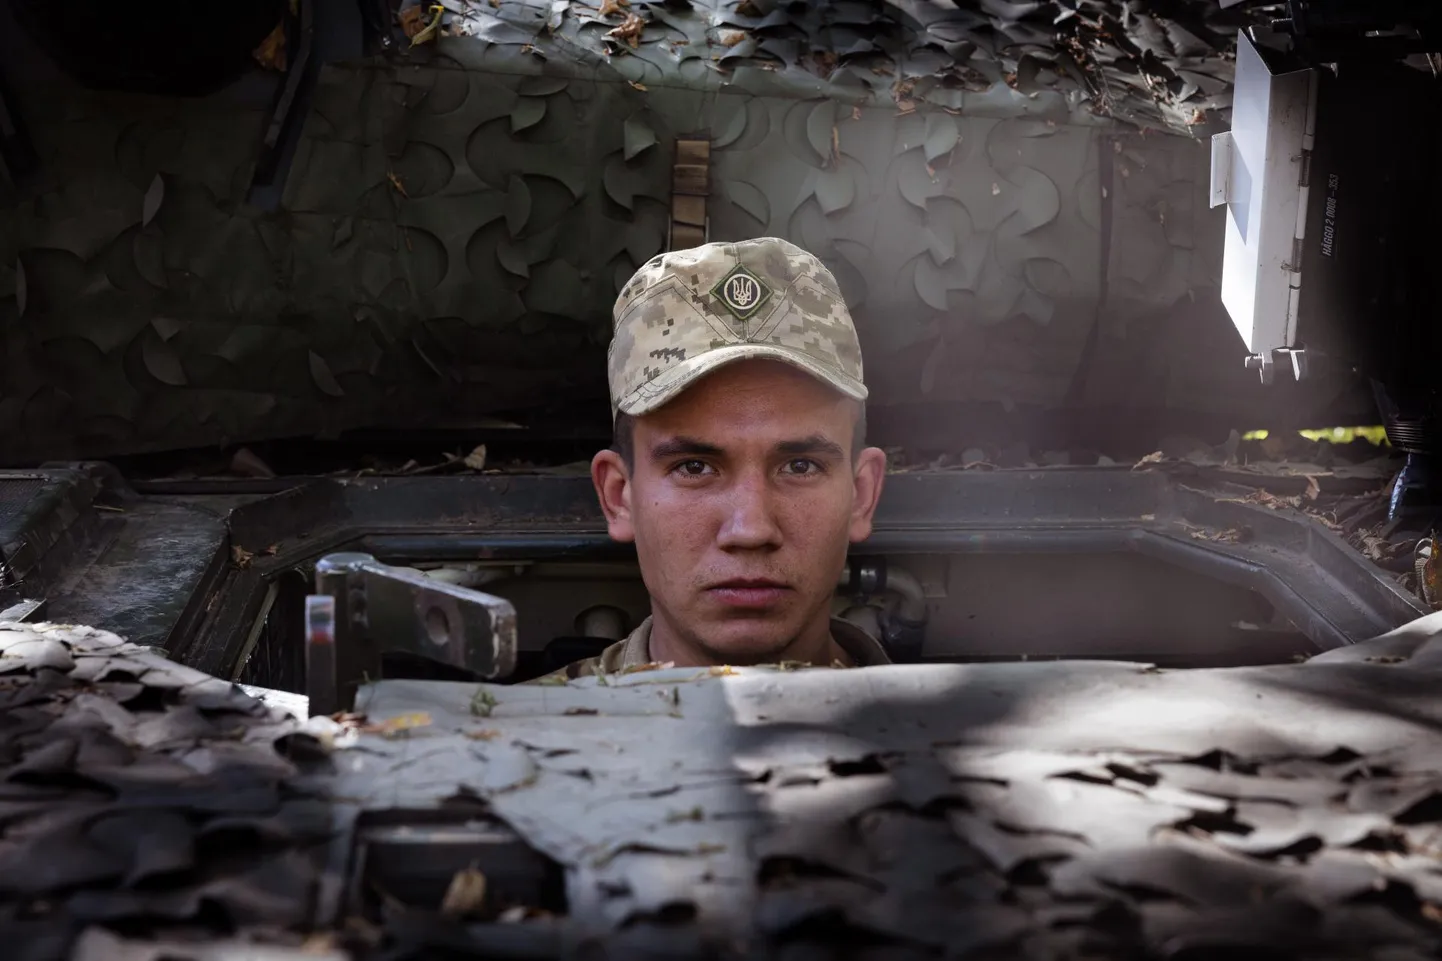 Mobiliseeritute motivatsioon võib sõjas olla väga erinev. Ukrainlaest nooremseersant kutsungiga Maloi (Väike) ja tema lahingumasina CV90 meeskond kehva motivatsiooni üle ei kurtnud. 